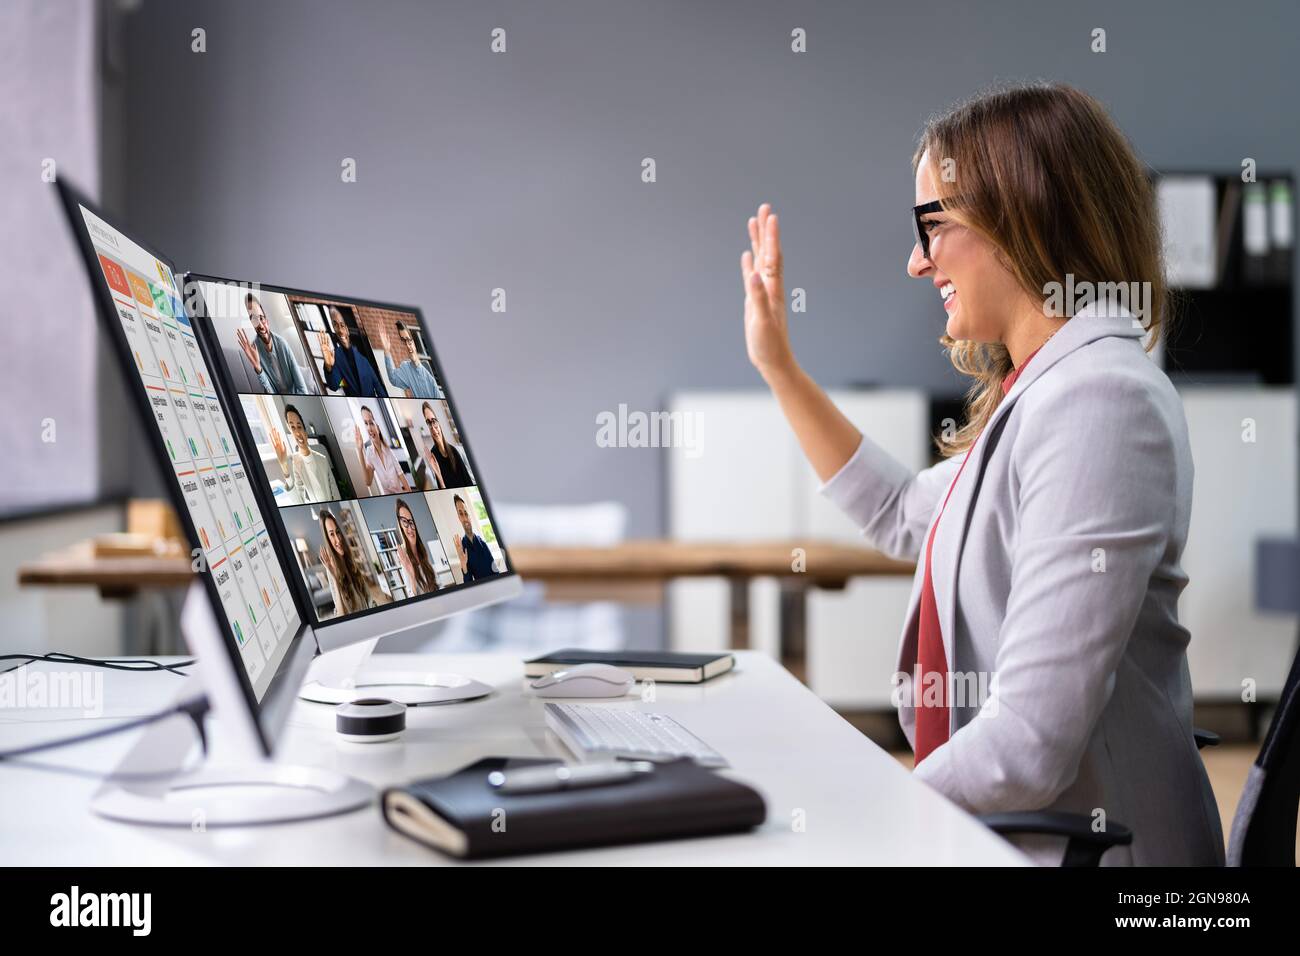 Seminario web de trabajo de videoconferencia en línea sobre el escritorio Foto de stock